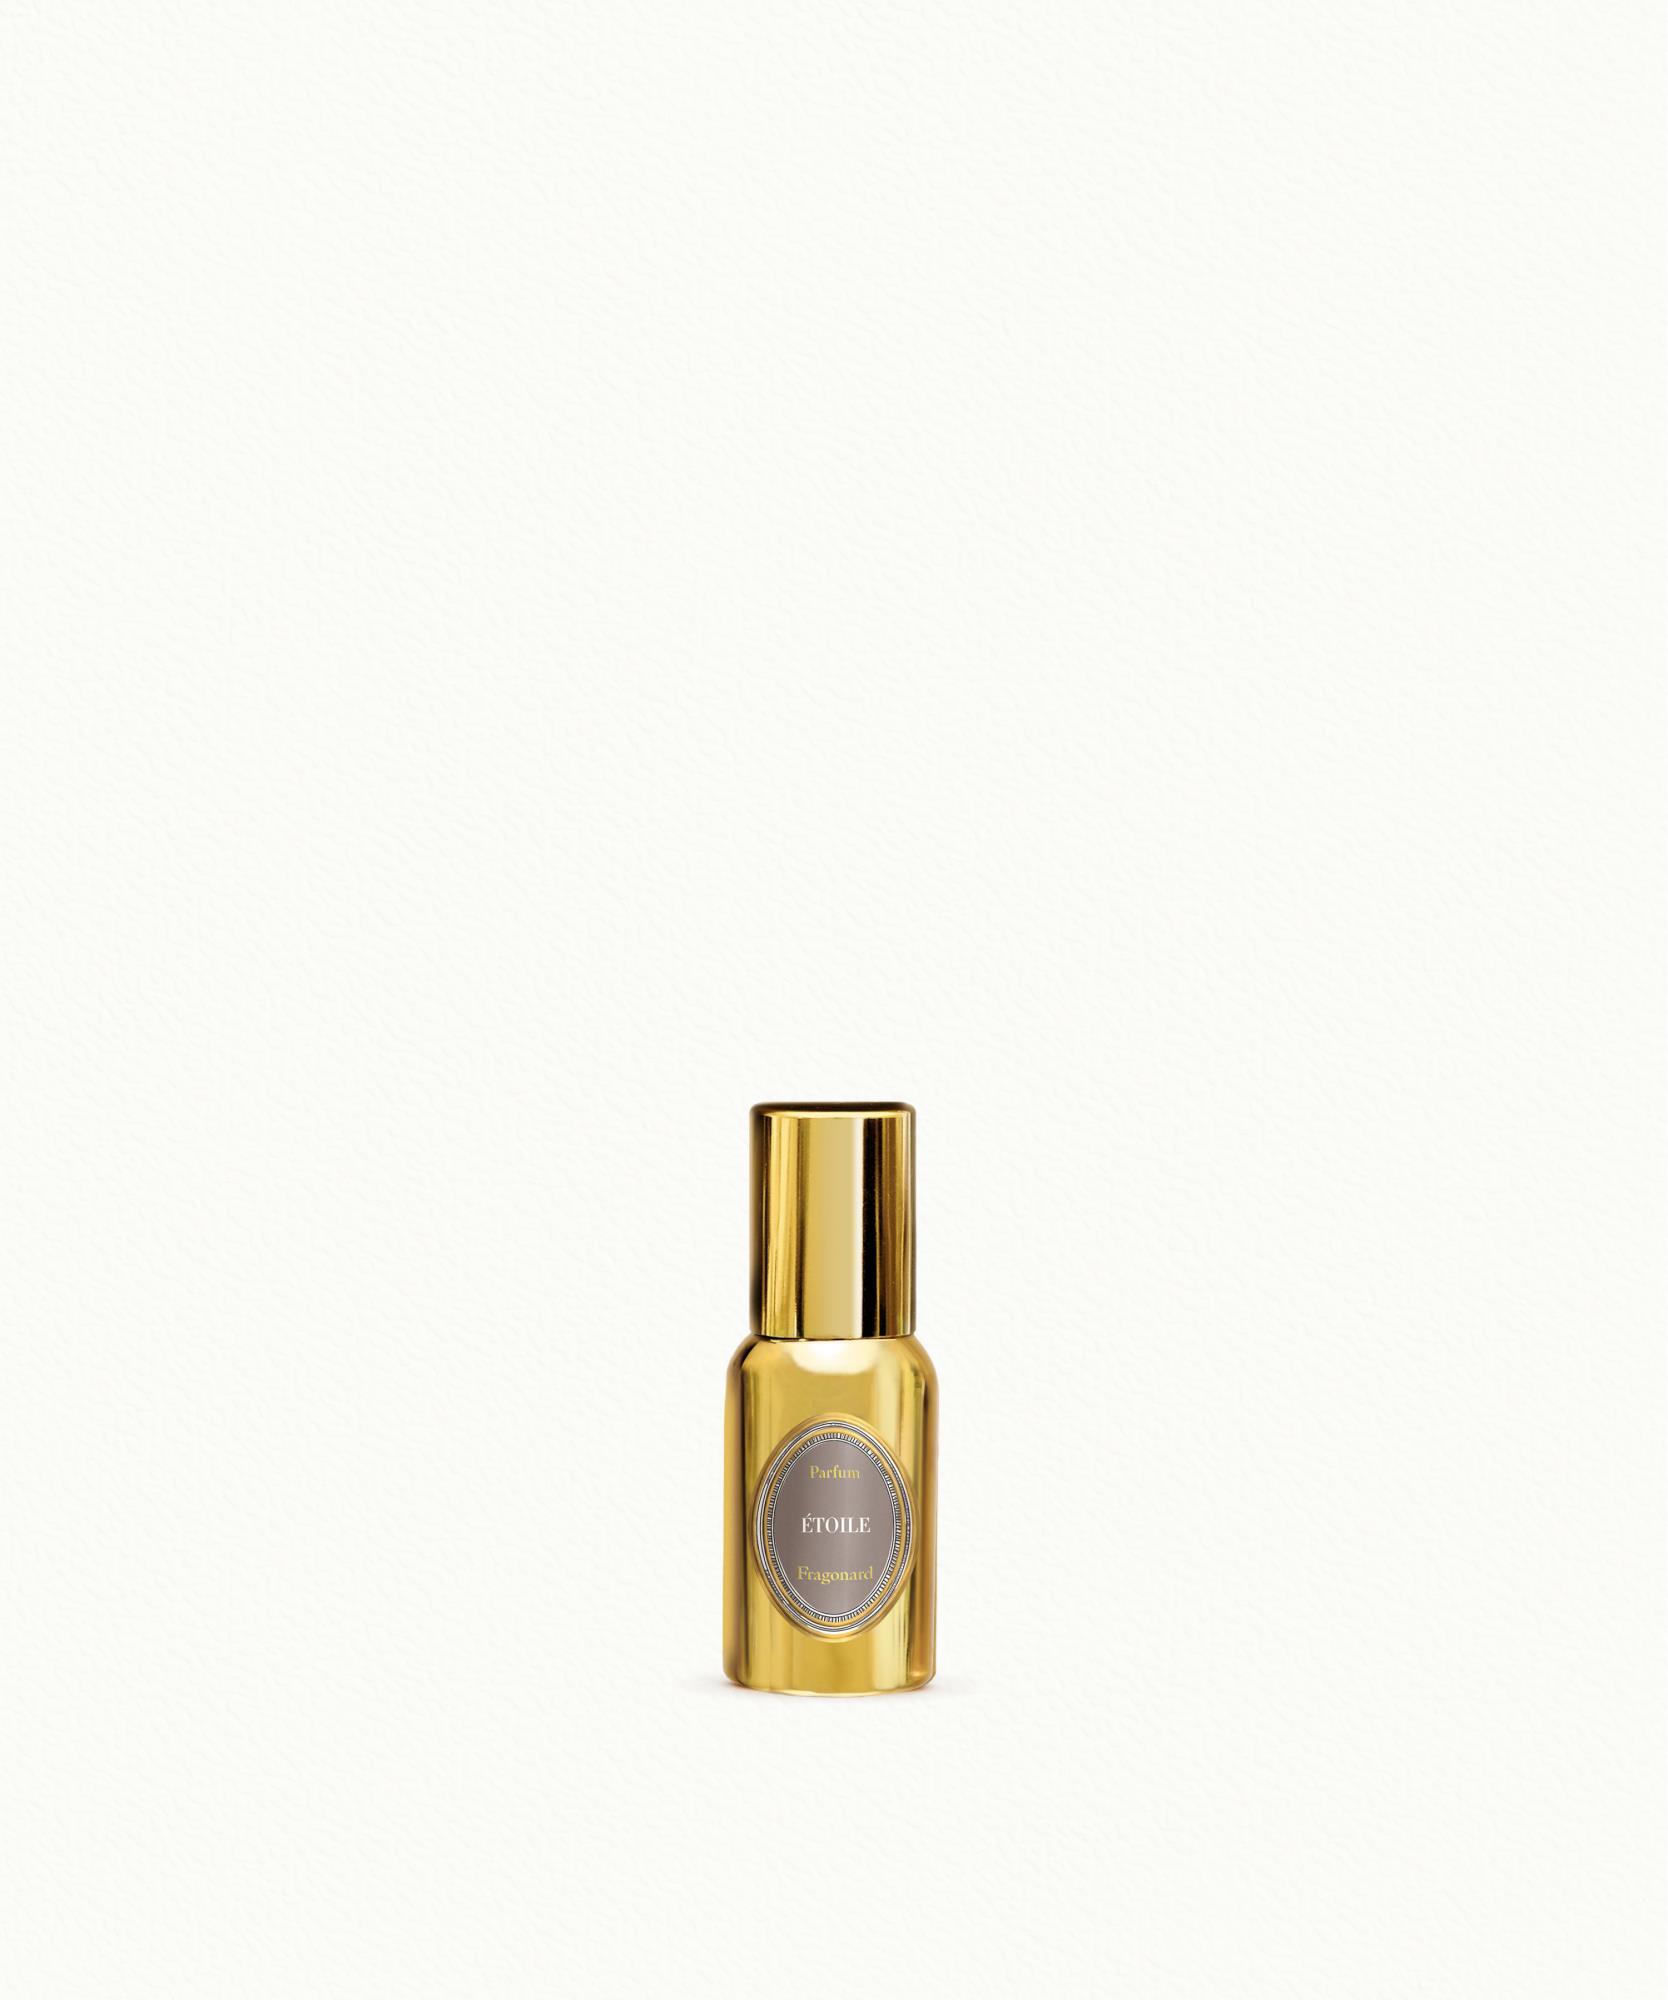 Etoile Perfume 15ml Fragonard - 35,00